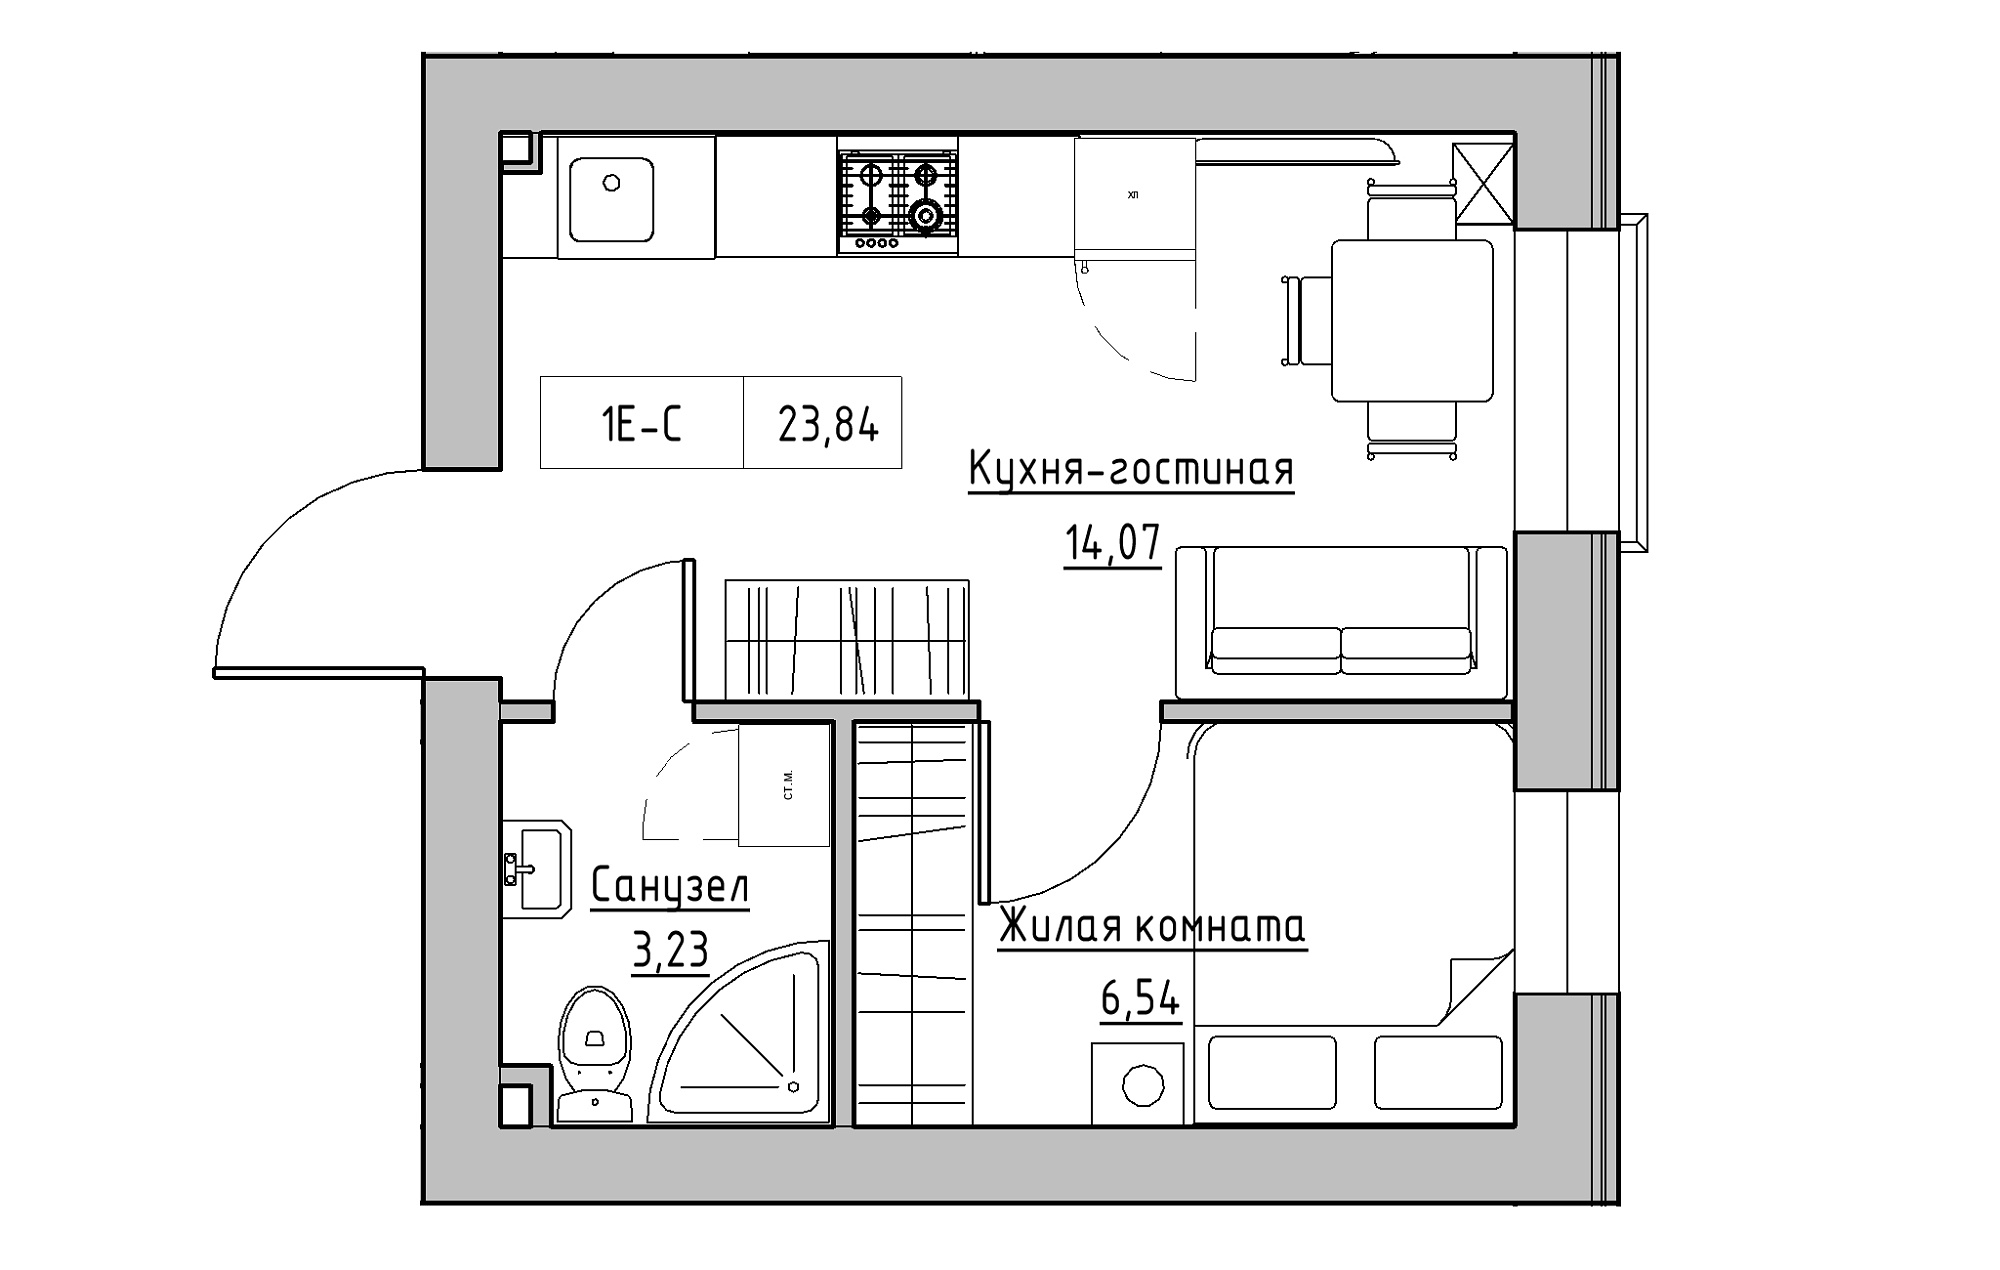 Планування 1-к квартира площею 23.84м2, KS-018-05/0014.